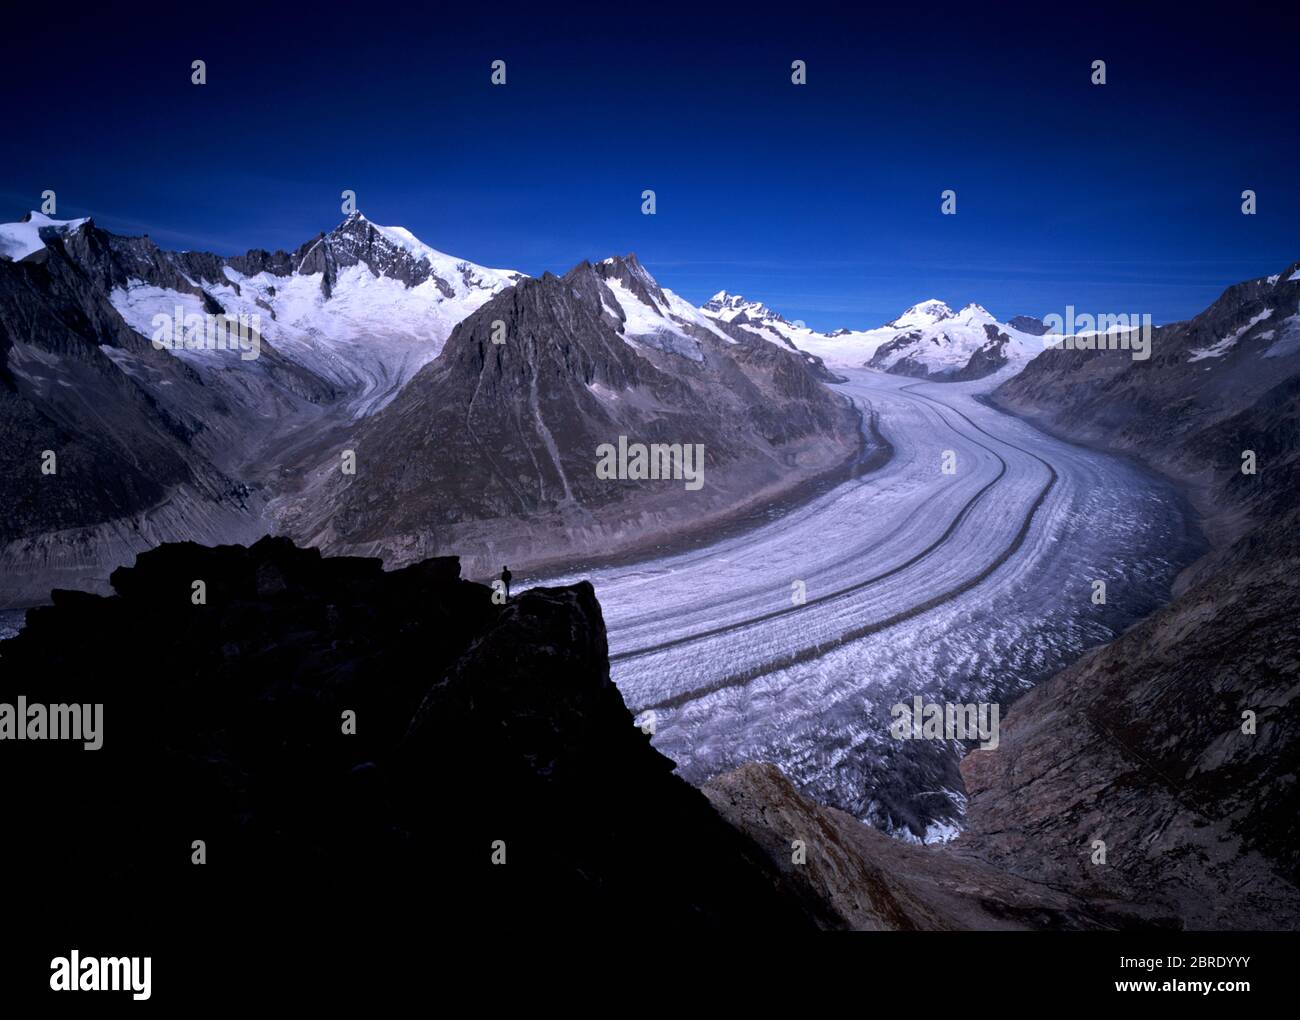 Le glacier de l'Aletschglake, le plus grand glacier des Alpes européennes, vu depuis le sommet de l'Eggishorn en Valais suisse. Crédit: Malcolm Park/Alay. Banque D'Images